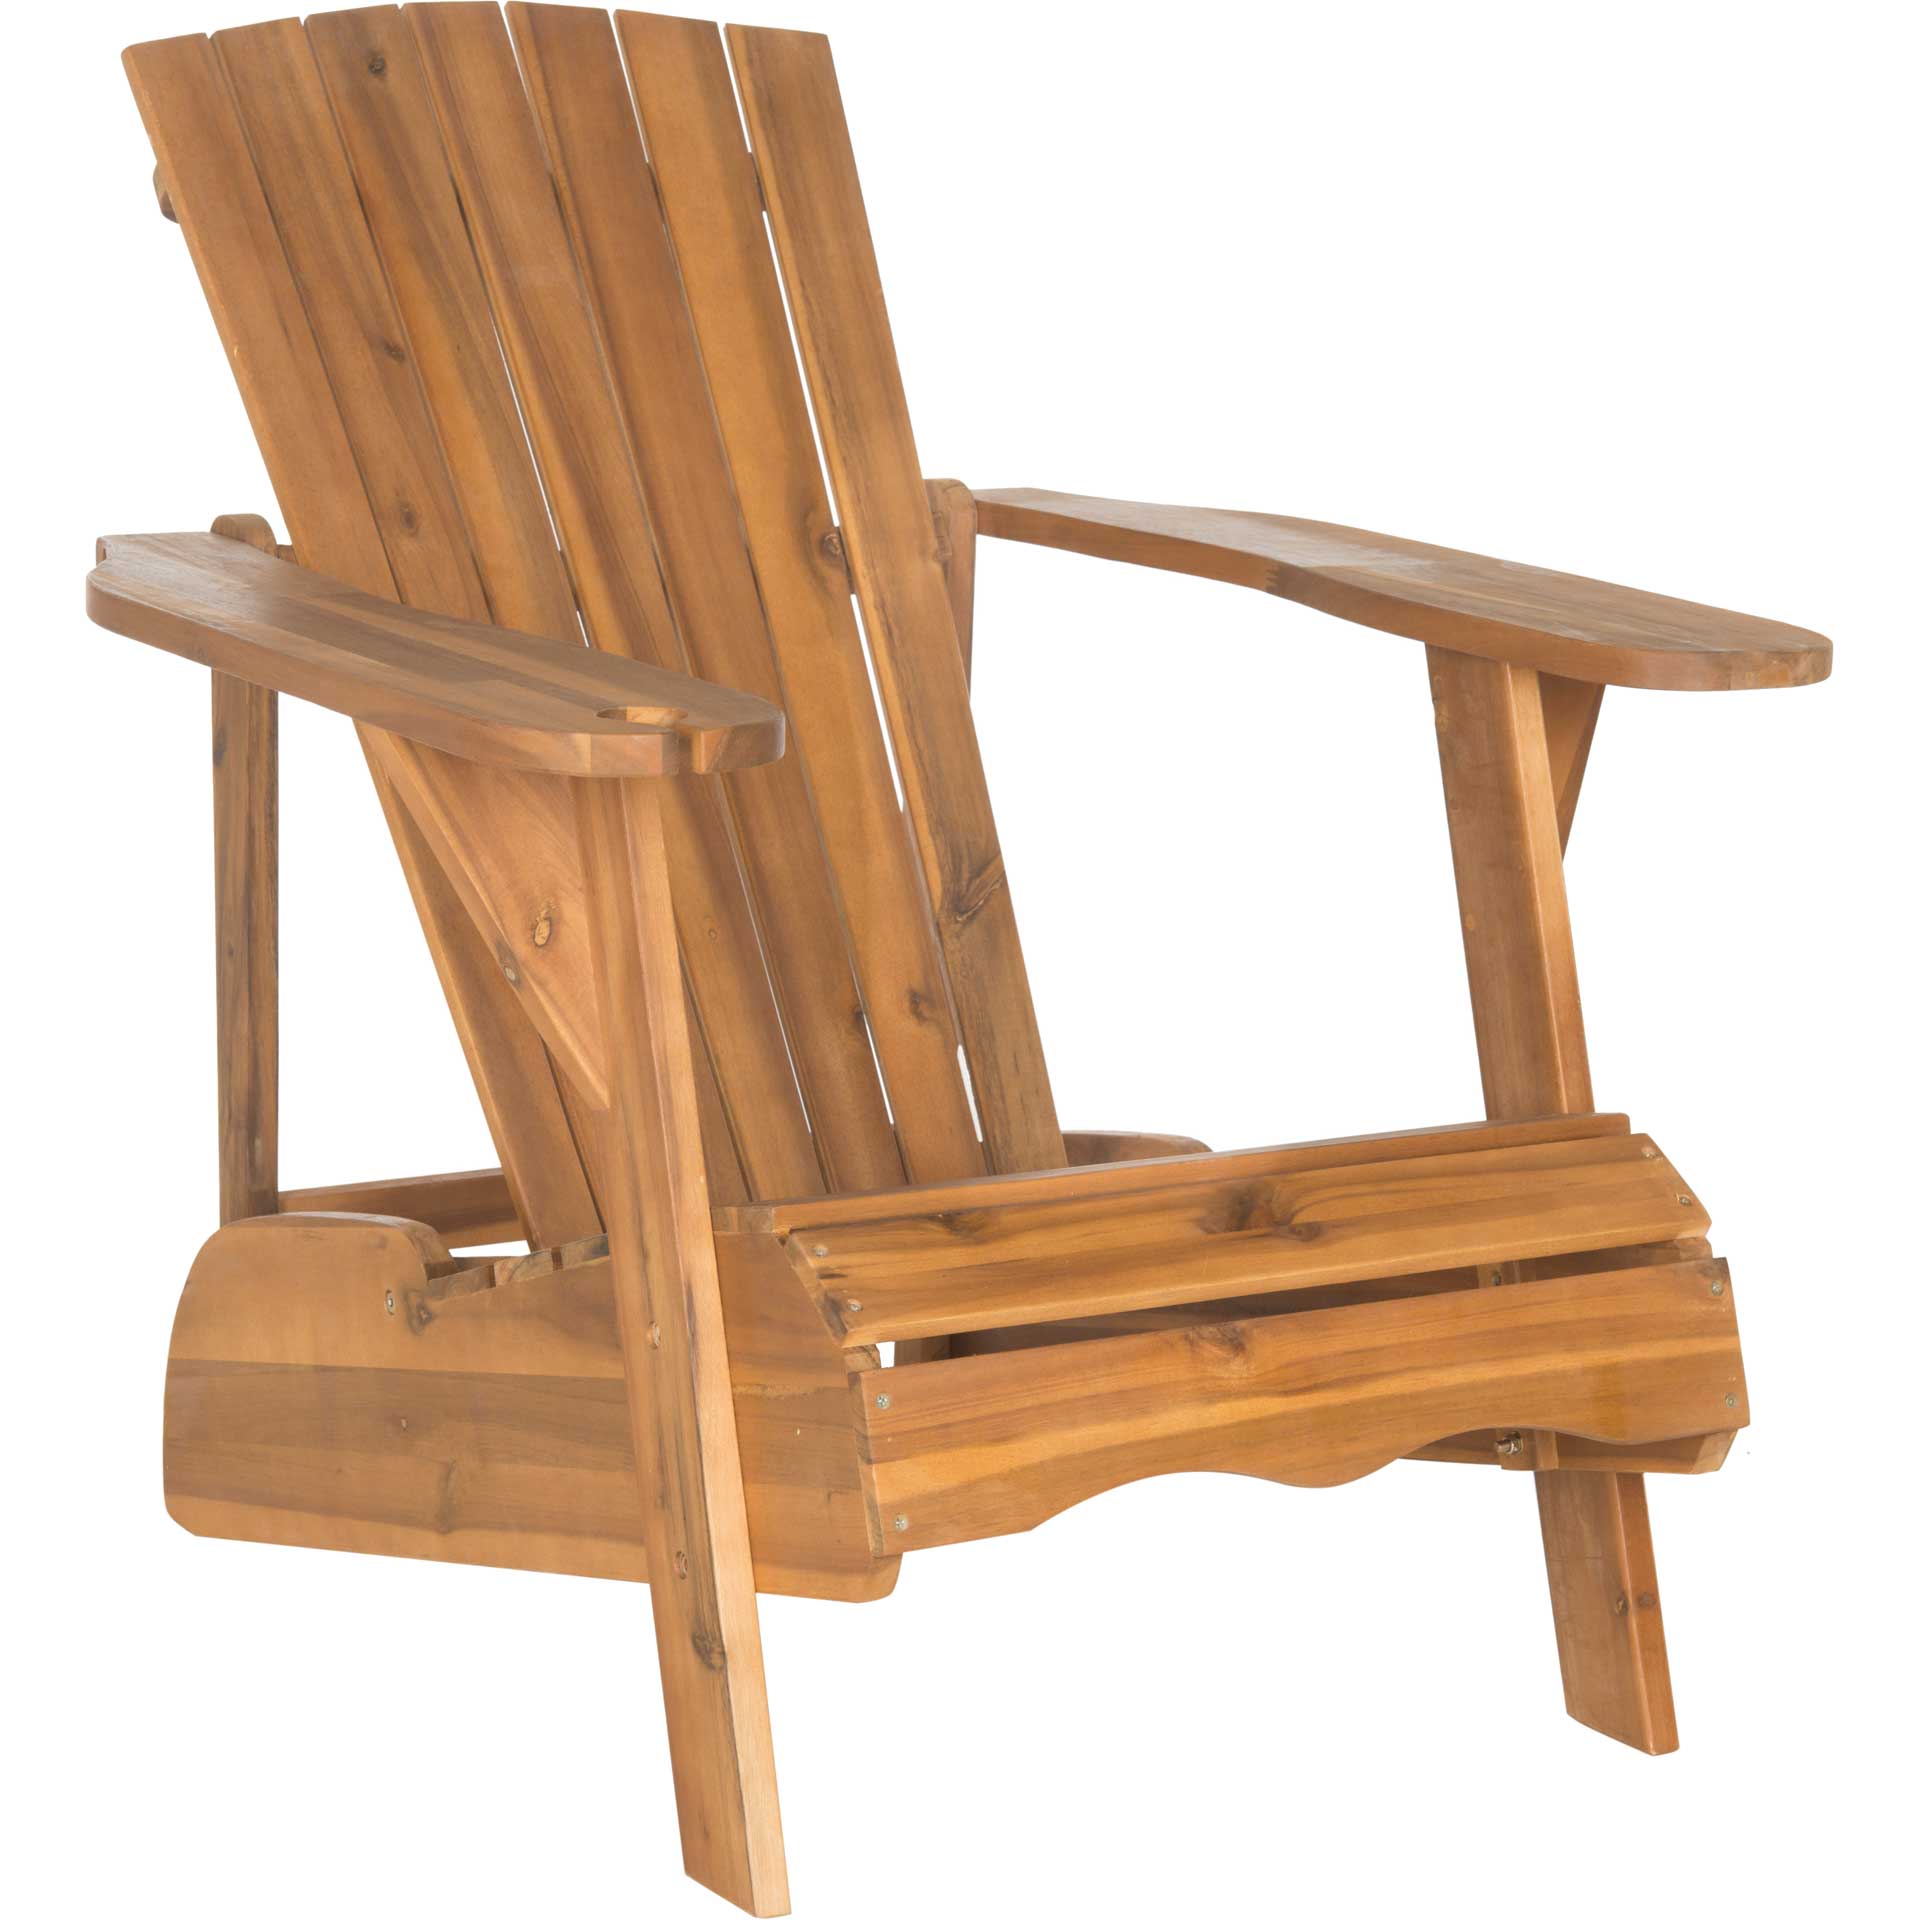 Violetta Wine Glass Holder Adirondack Chair Teak Brown